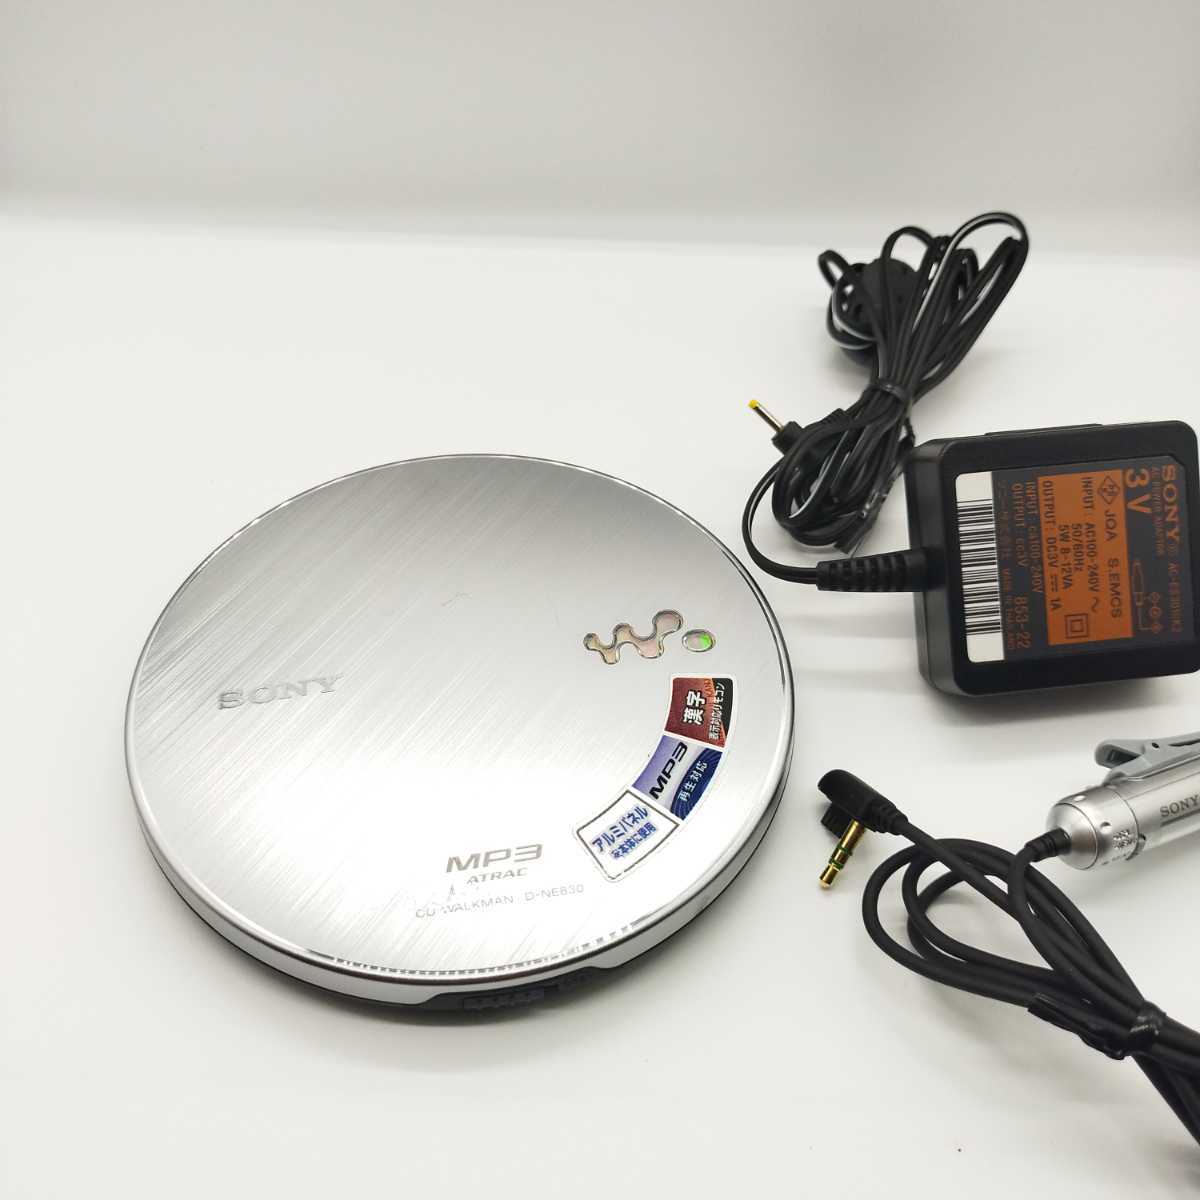 無料発送 Sony CD WALKMAN D-NE830 リモコン付き 取説付き sushitai.com.mx